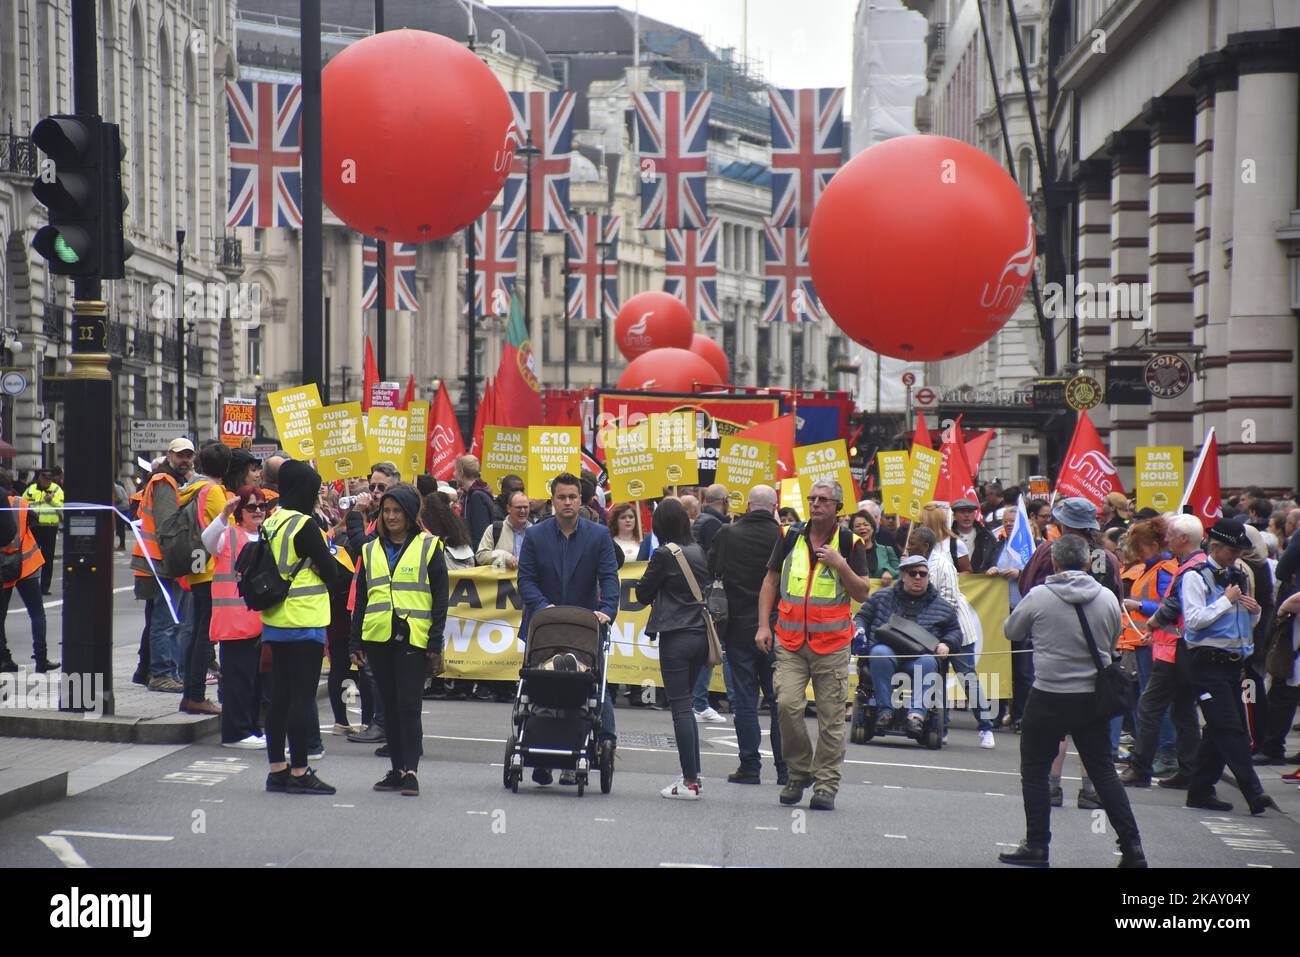 Der Trades Union Congress (TUC) marschieren durch das Zentrum Londons und fordern am 12. Mai 2018 einen neuen Deal für die arbeitenden Menschen in London. Die TUC rief am 12. Mai zu einer nationalen Demonstration auf, um ein Ende der Sparpolitik der Regierung und bessere Rechte für alle am Arbeitsplatz zu fordern. (Foto von Alberto Pezzali/NurPhoto) Stockfoto